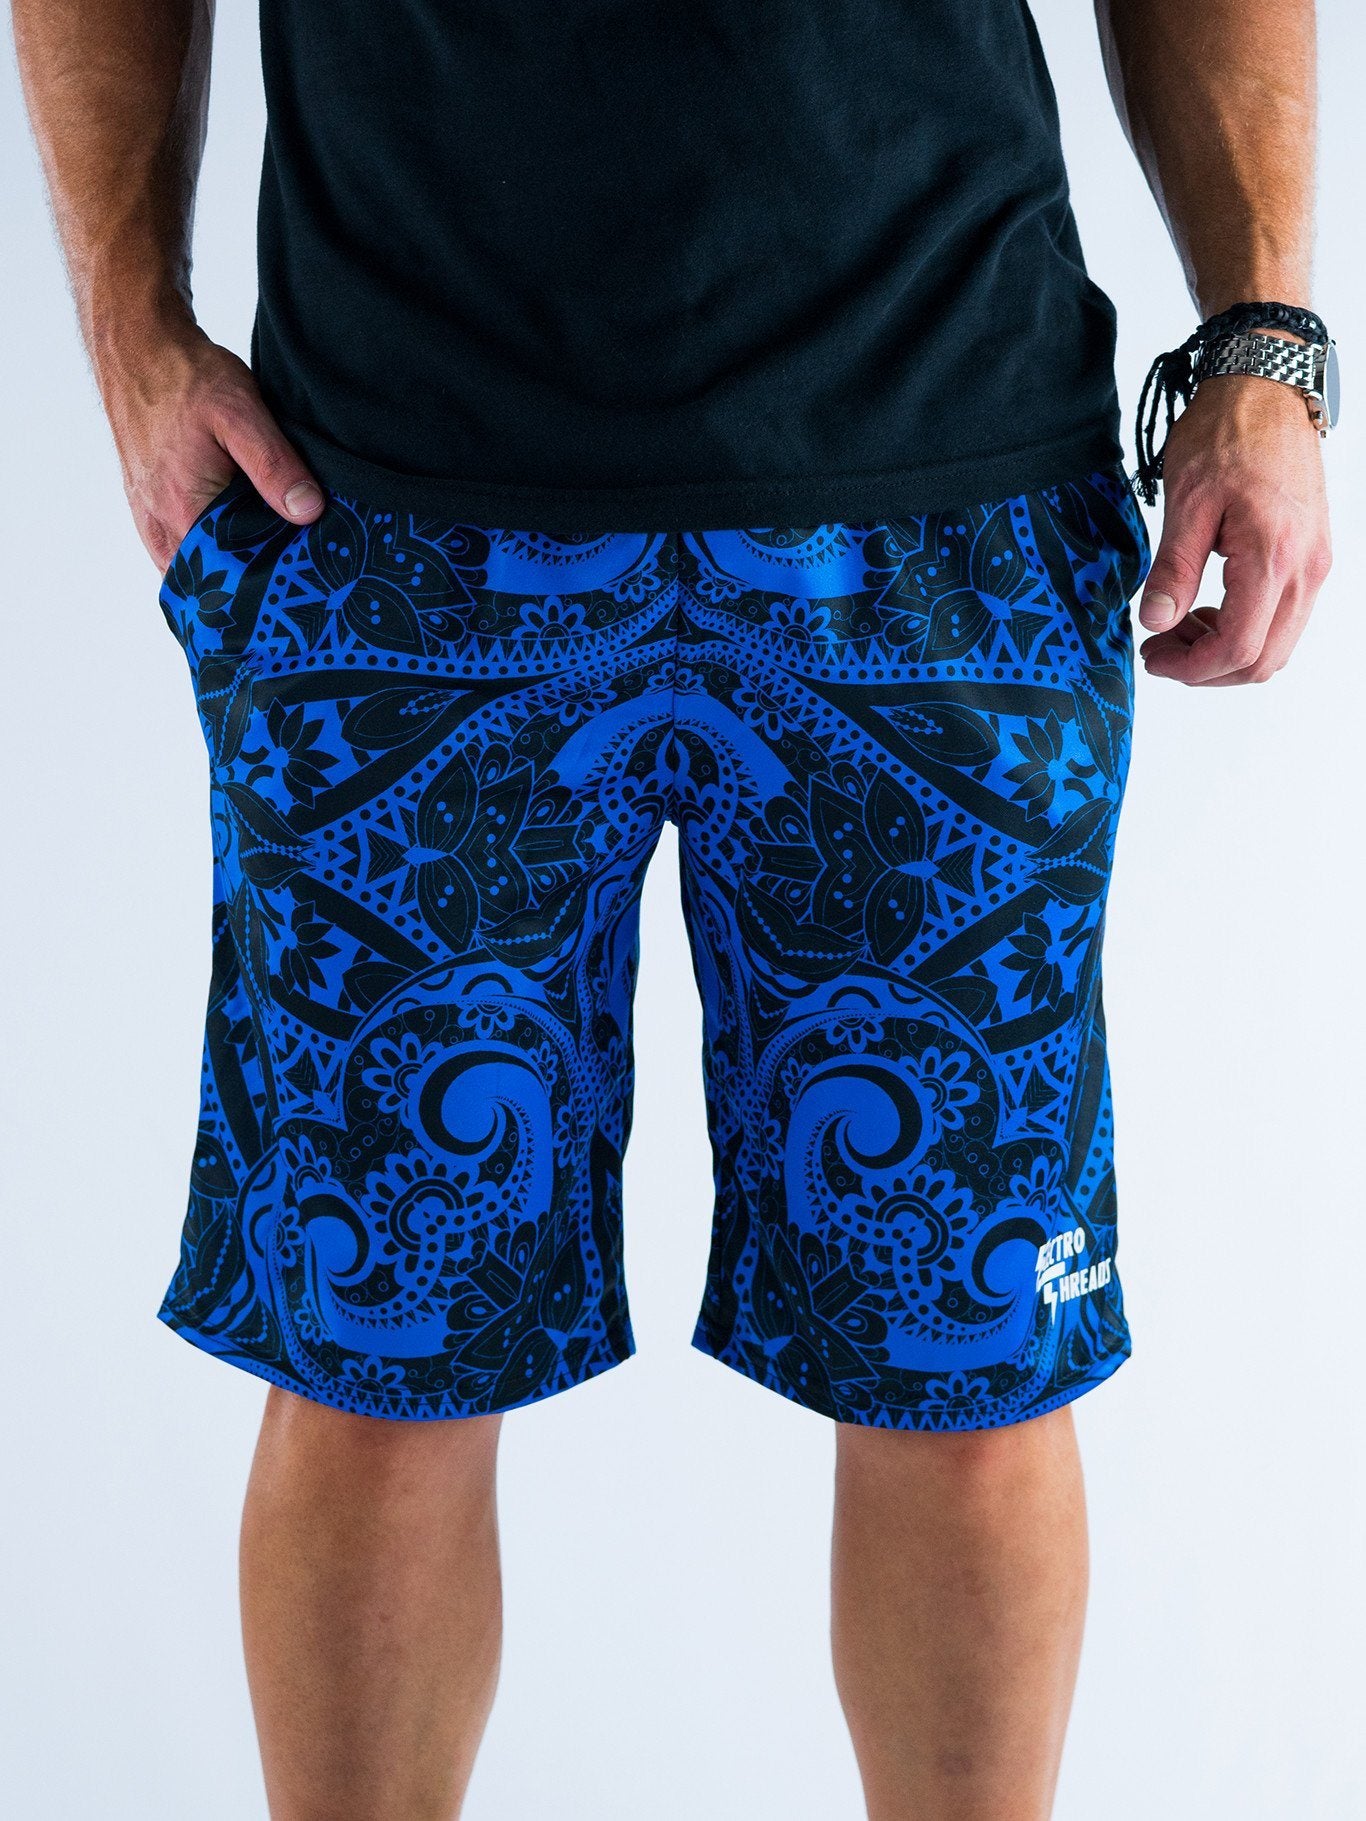 Blue Mandala Shorts Mens Shorts T6 